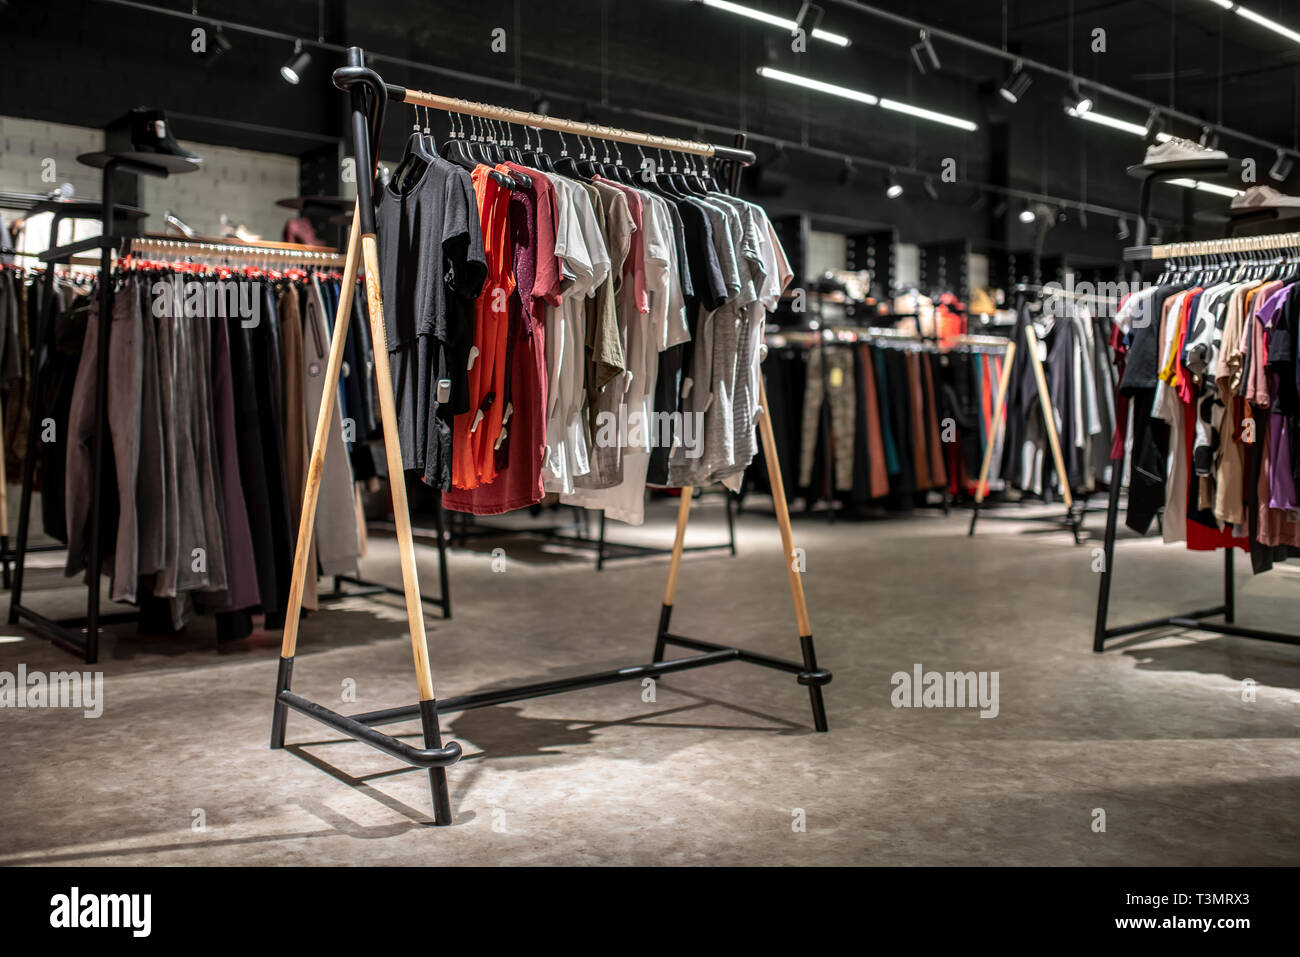 La tienda de ropa moderna con una amplia selección de diferentes y zapatas de desgaste Foto de stock